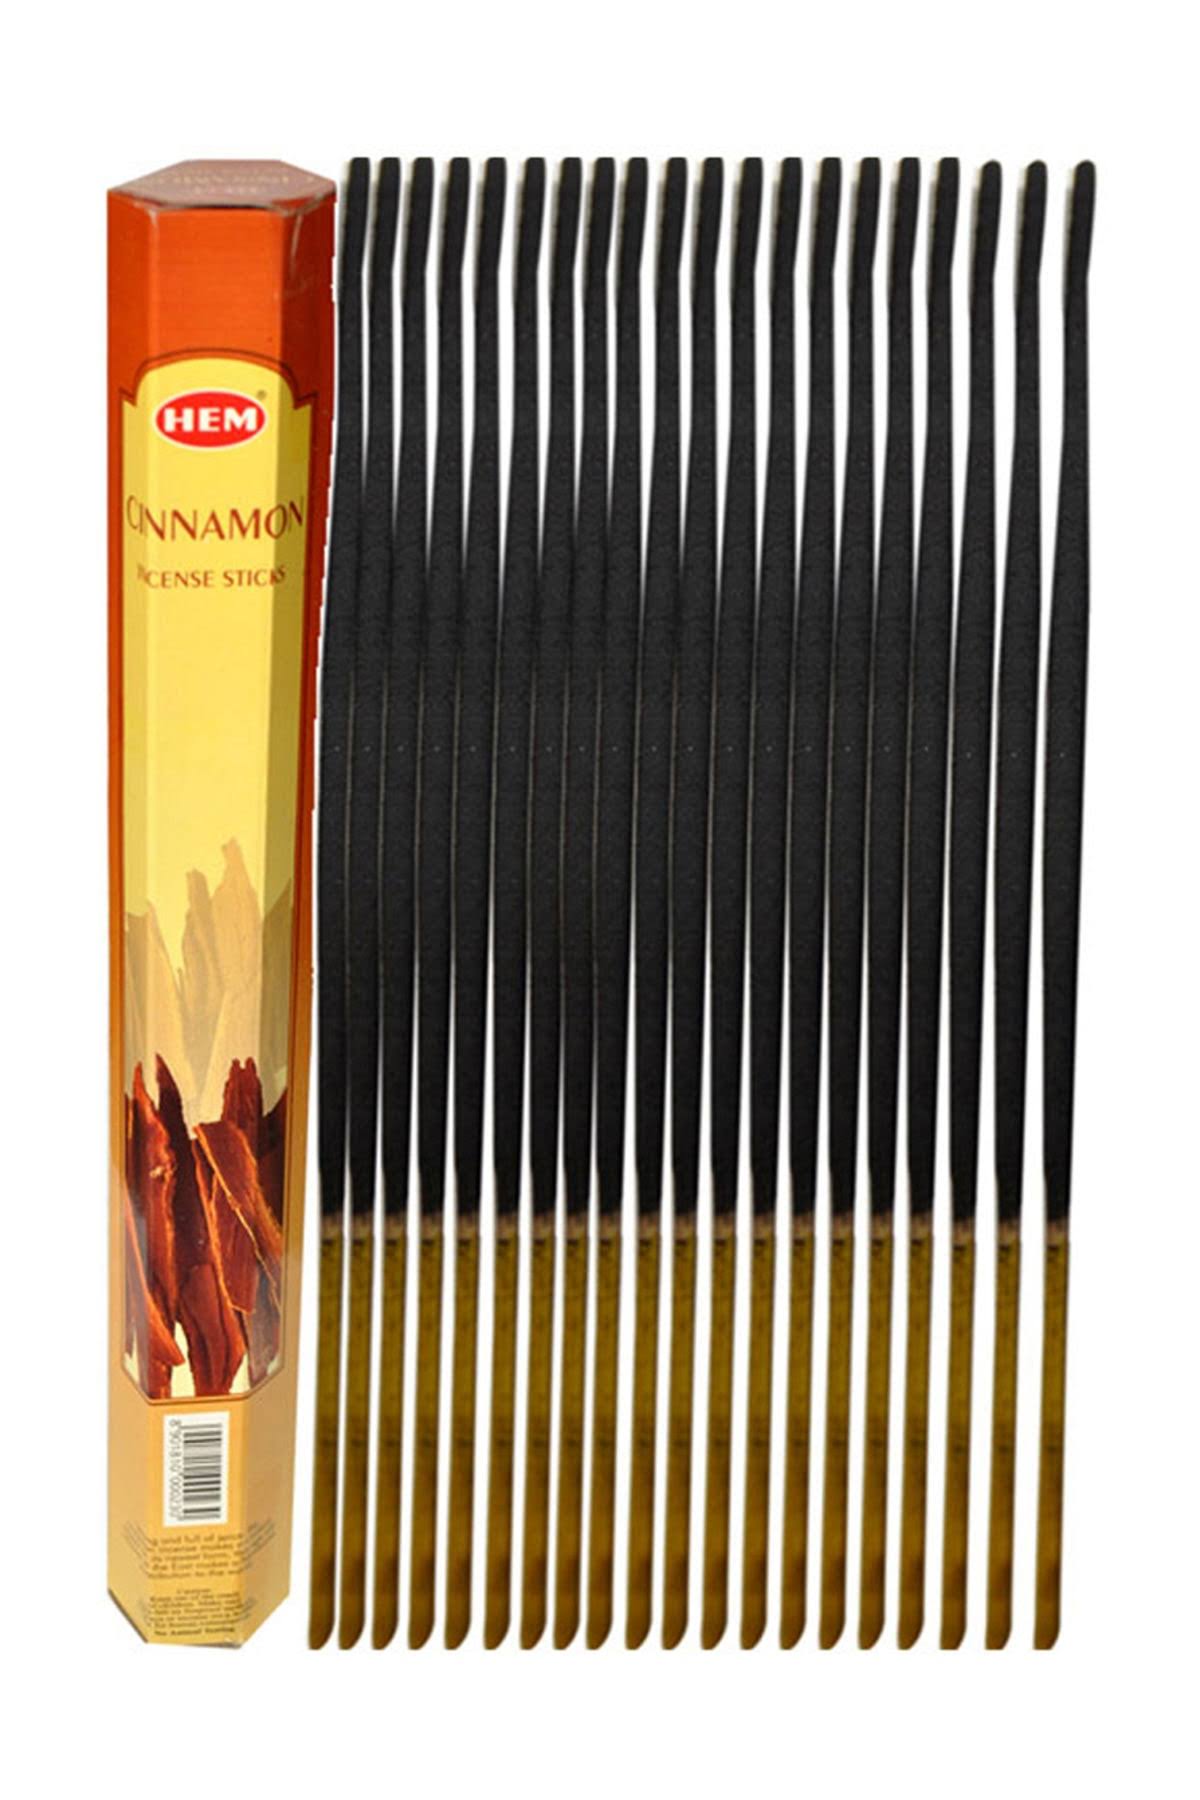 Hem Cinnamon Incense Sticks - 20 Stick